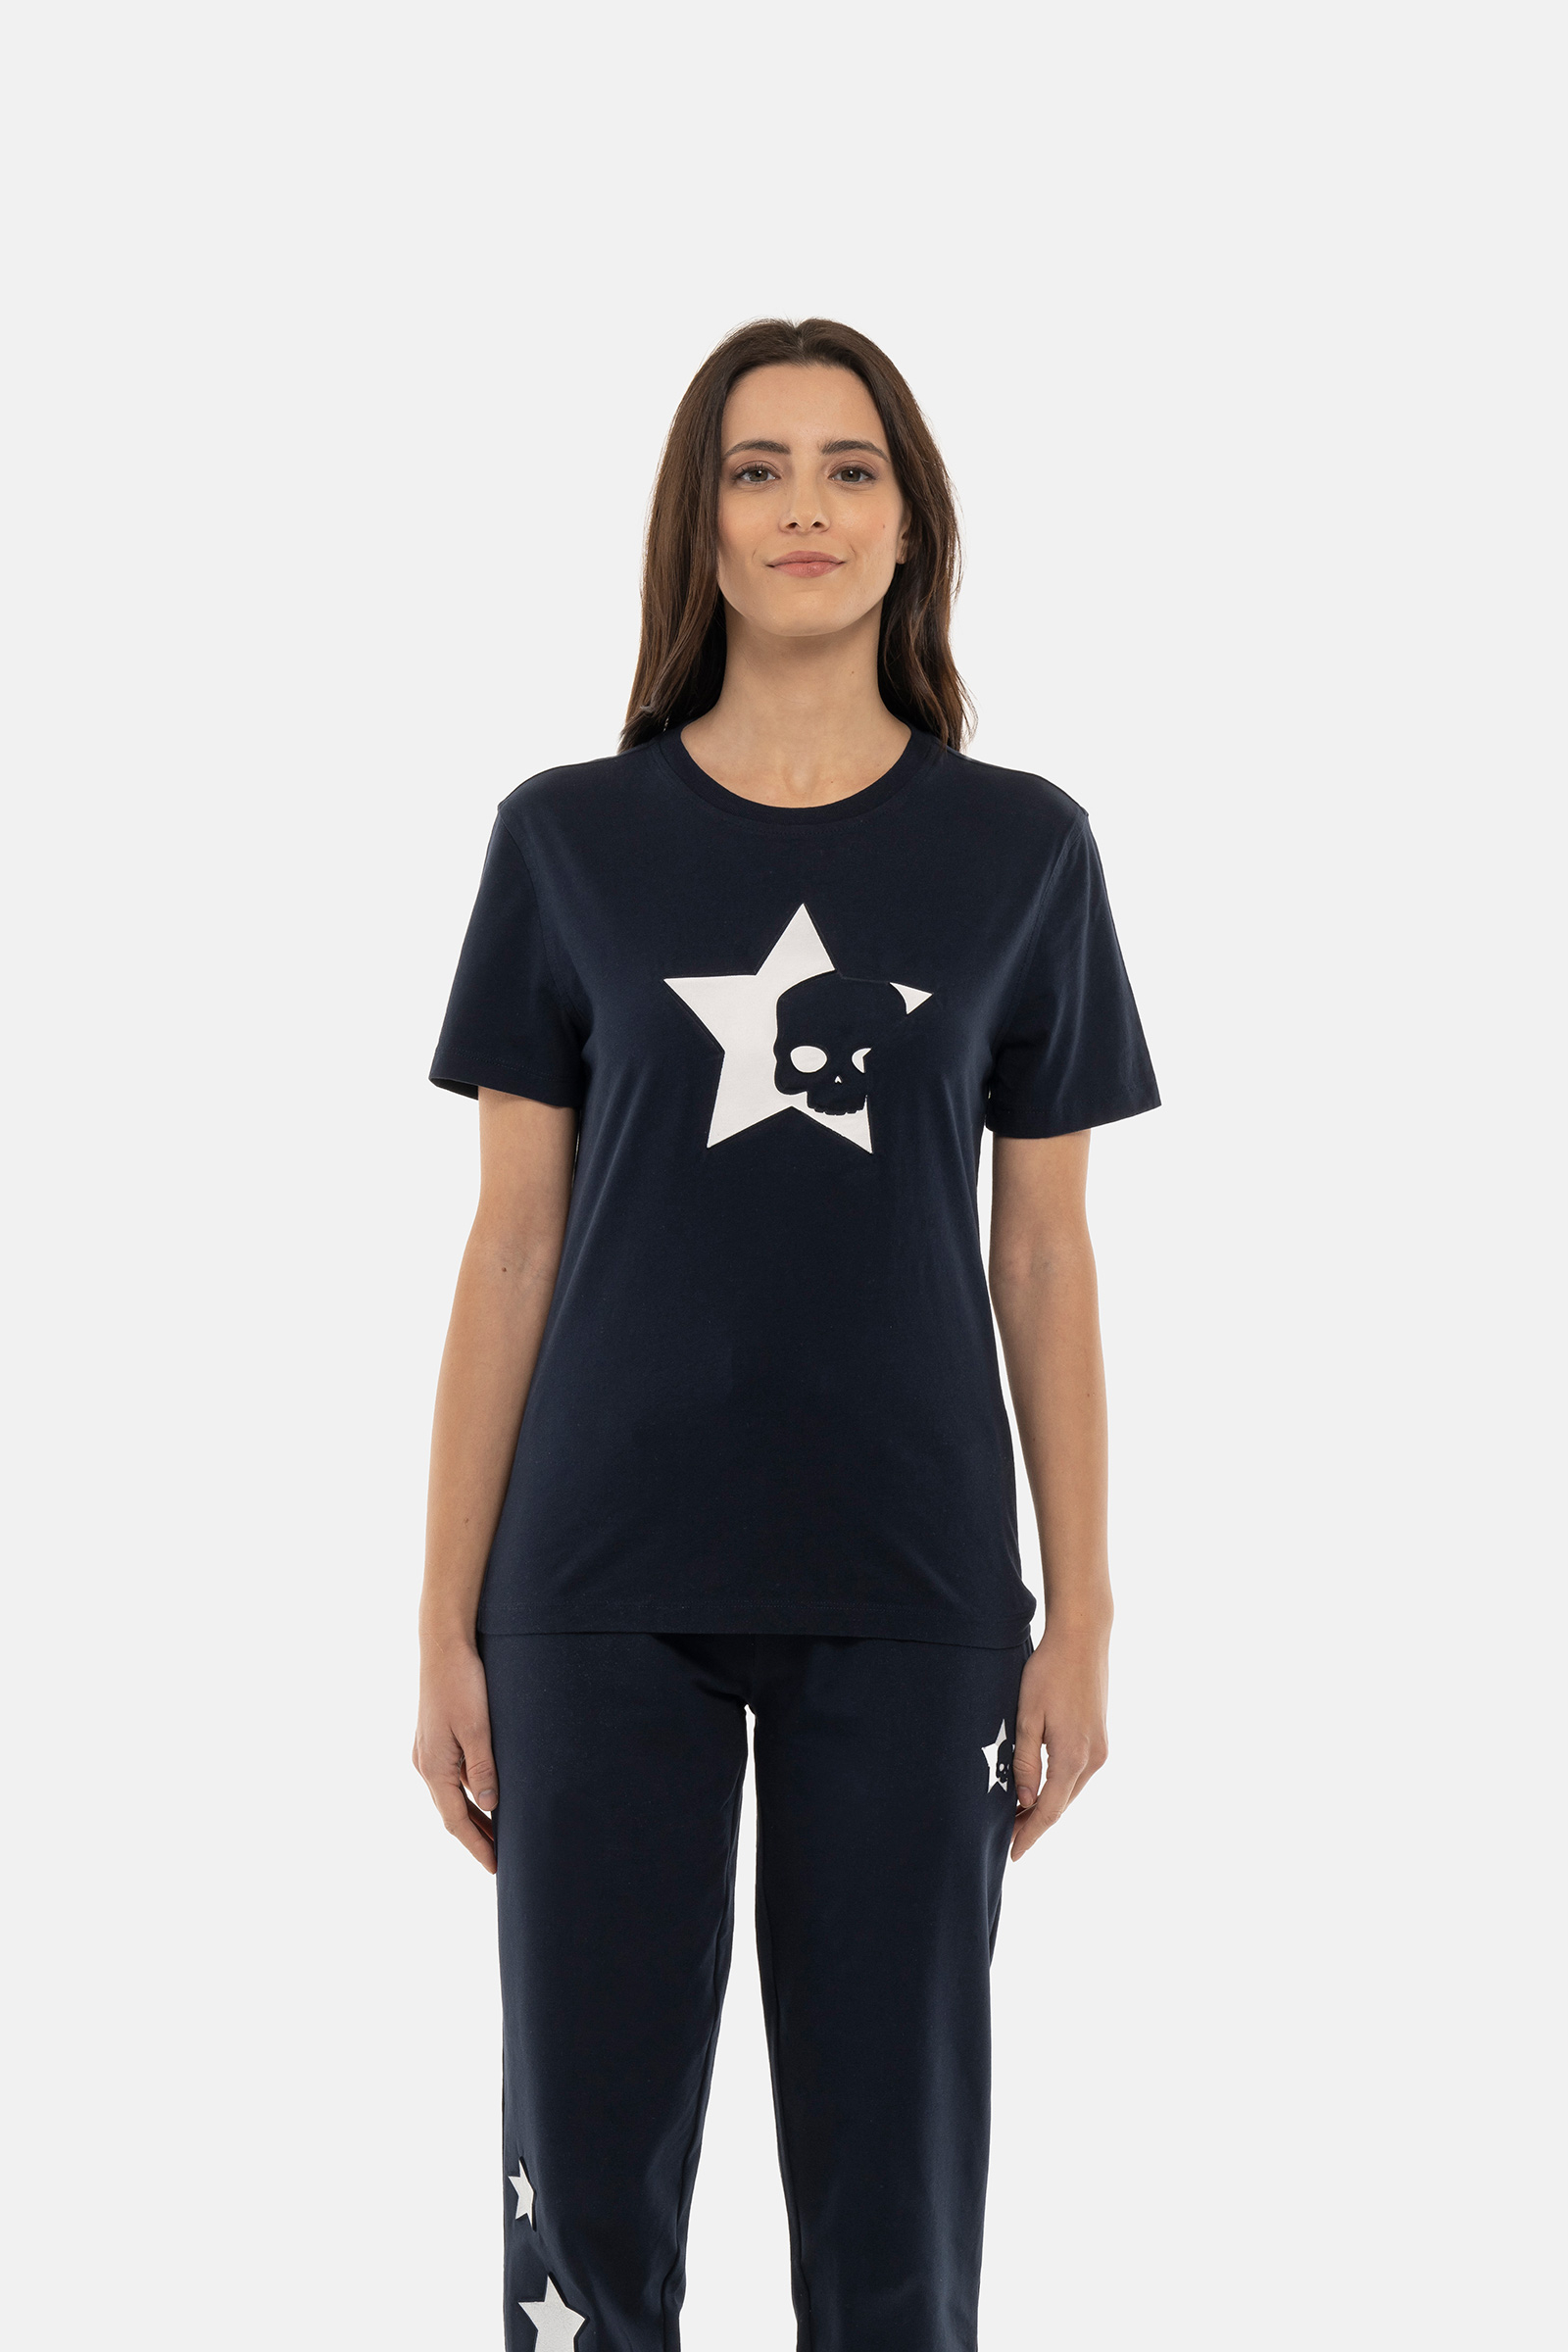 STARS TEE - Apparel - Hydrogen - Luxury Sportwear